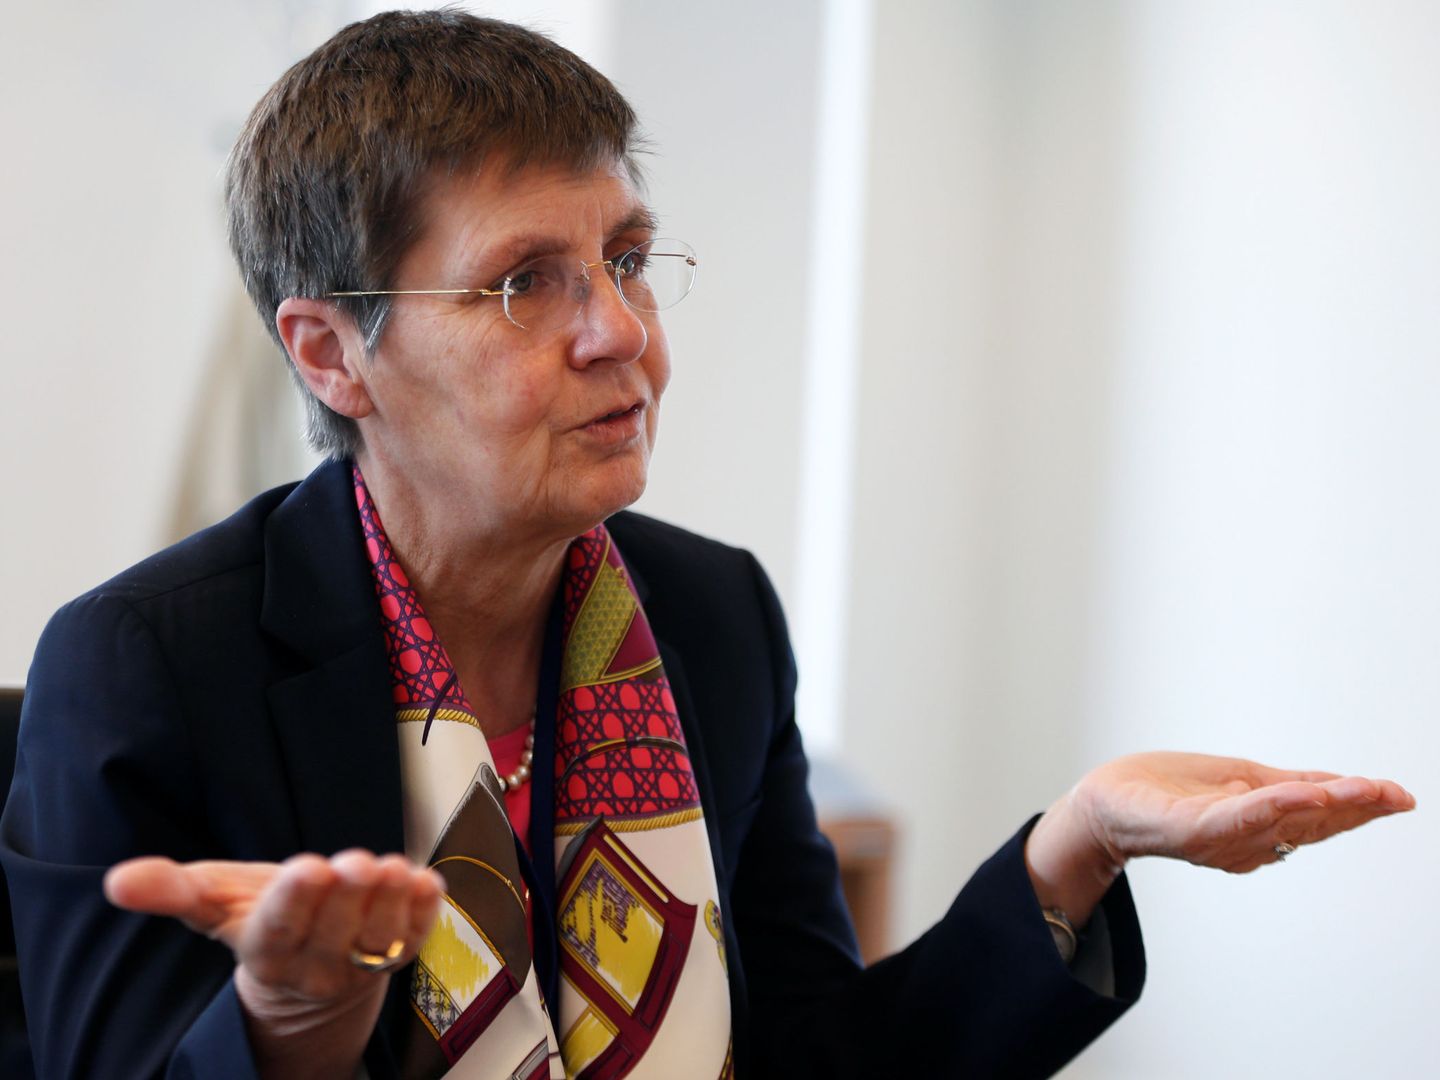 Elke König, presidenta de la Junta Única de Resolución bancaria. (Reuters)